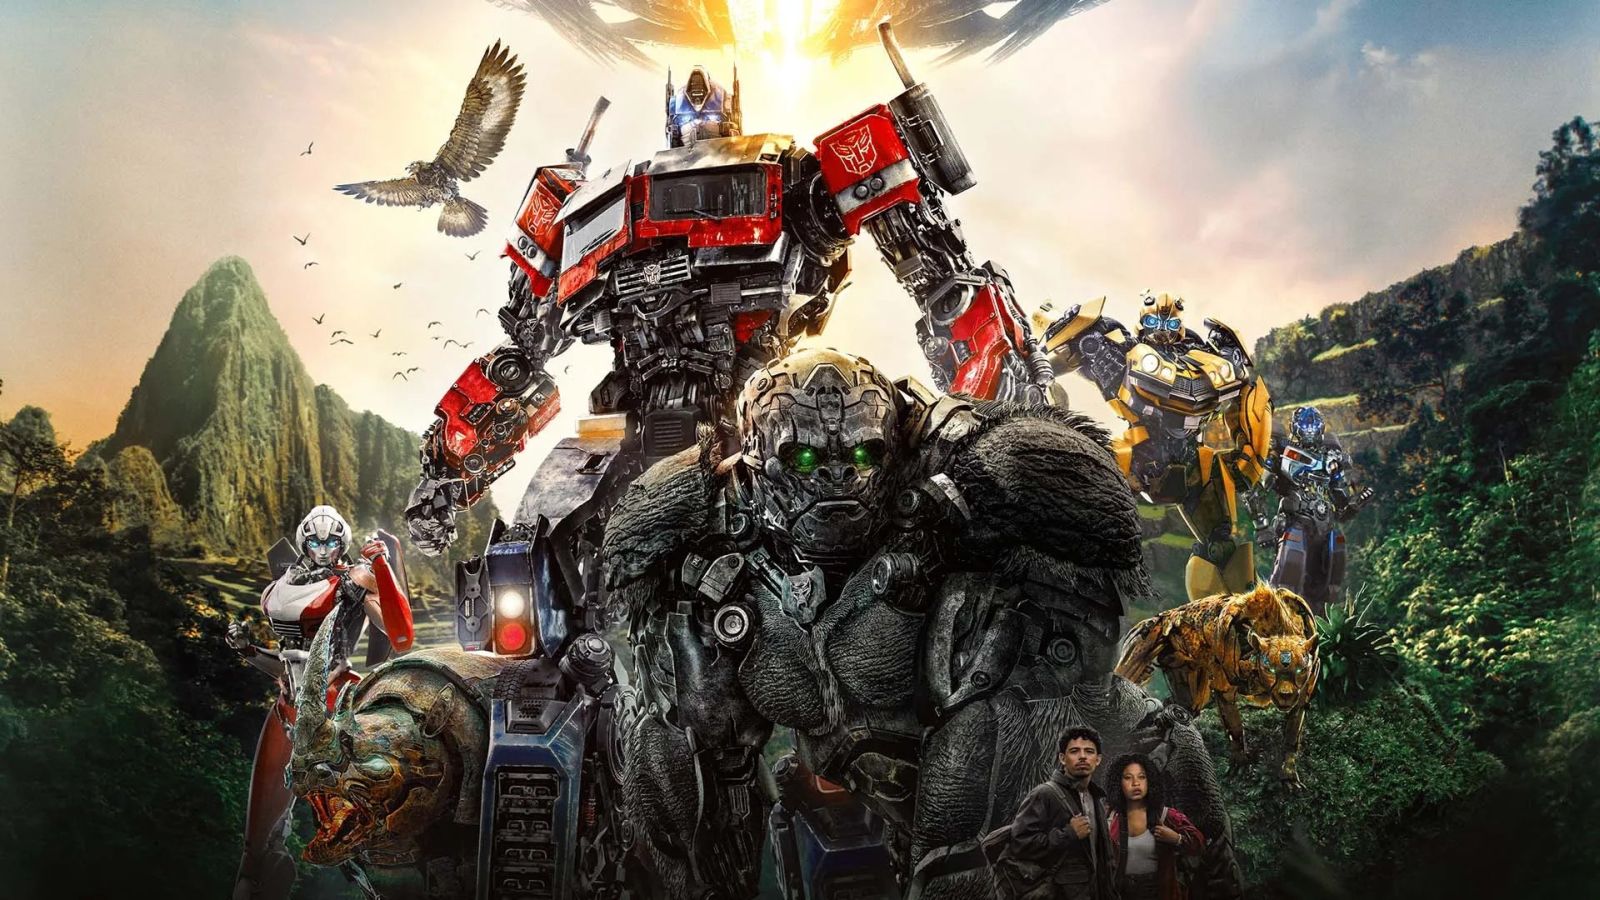 Transformers: Il Risveglio in 4K UHD, la recensione: audio e video al top in una bellissima steelbook